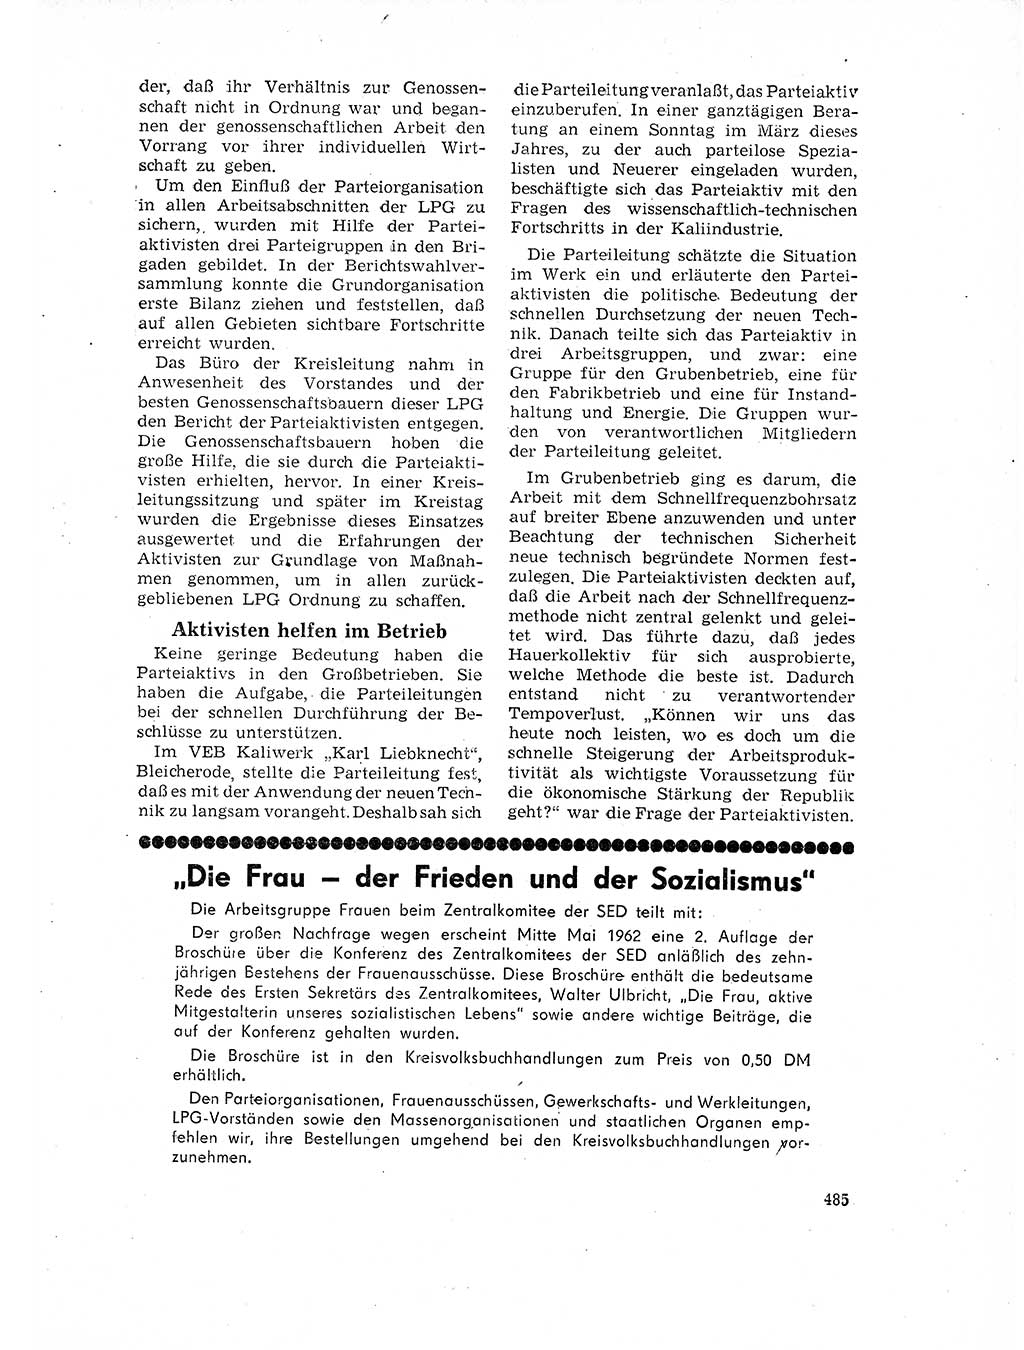 Neuer Weg (NW), Organ des Zentralkomitees (ZK) der SED (Sozialistische Einheitspartei Deutschlands) für Fragen des Parteilebens, 17. Jahrgang [Deutsche Demokratische Republik (DDR)] 1962, Seite 485 (NW ZK SED DDR 1962, S. 485)